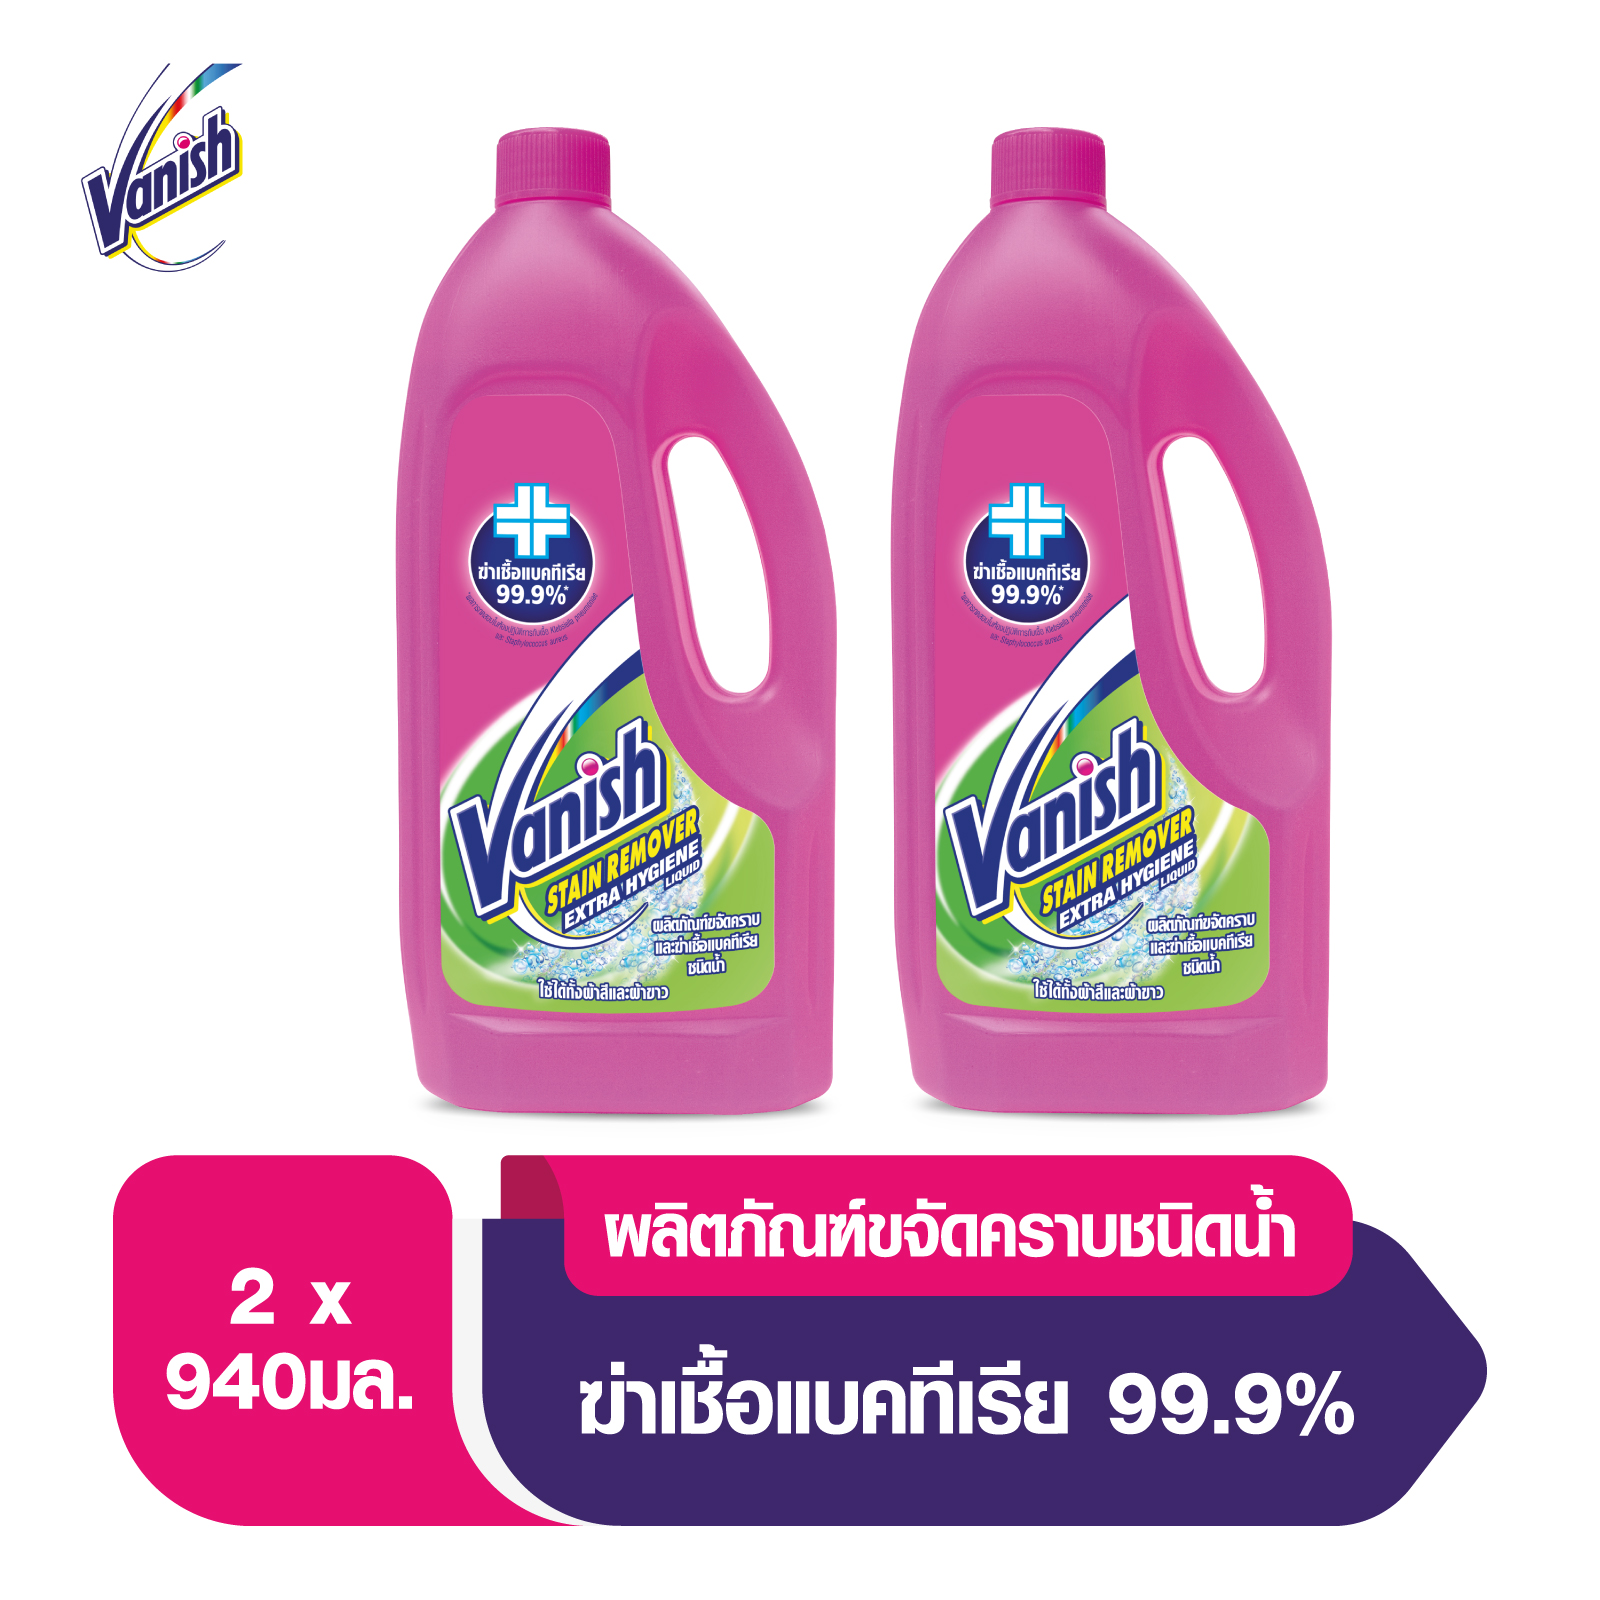 Vanish [แพ็คคู่] แวนิช ผลิตภัณฑ์ขจัดคราบ ชนิดน้ำ สูตรฆ่าเชื้อแบคทีเรีย99.9�0 มล